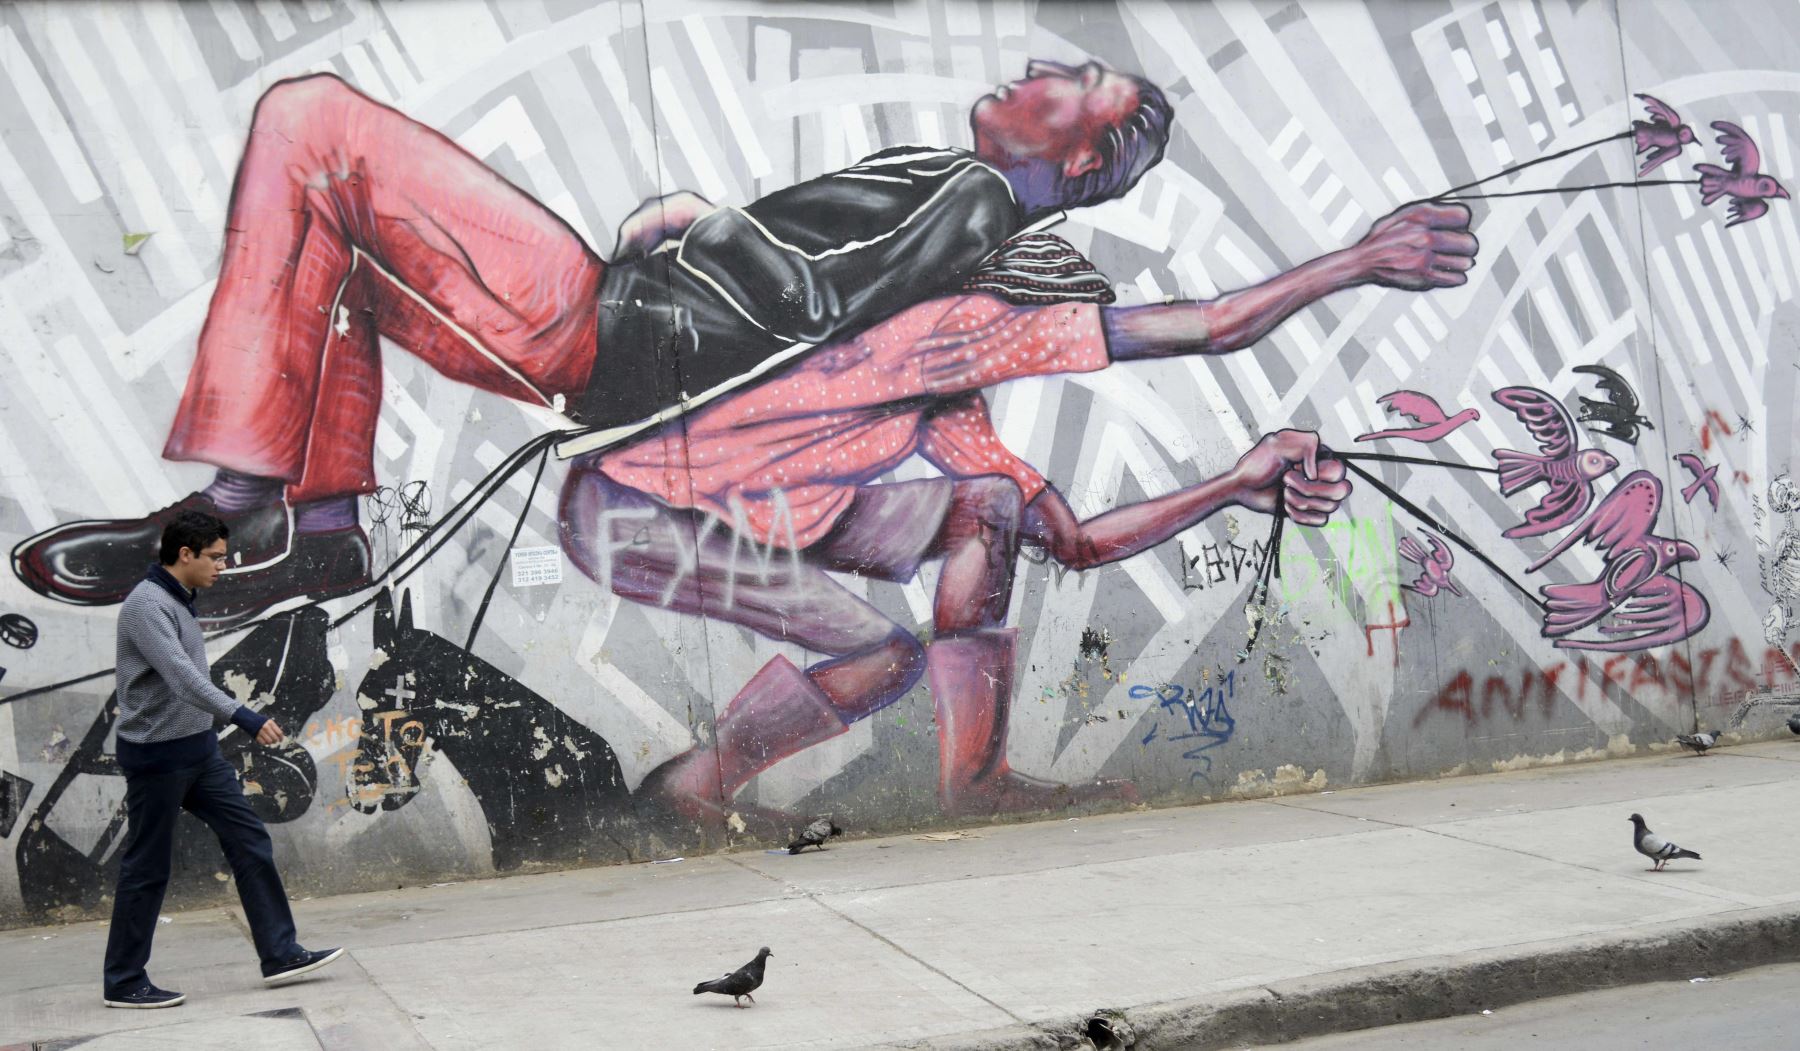 Una vez considerado el vandalismo, el graffiti está ganando más respeto en Colombia, lo que refleja el deseo de paz, mientras que el gobierno y la guerrilla de las FARC negocian fin al conflicto armado de medio siglo en el país. Foto: AFP